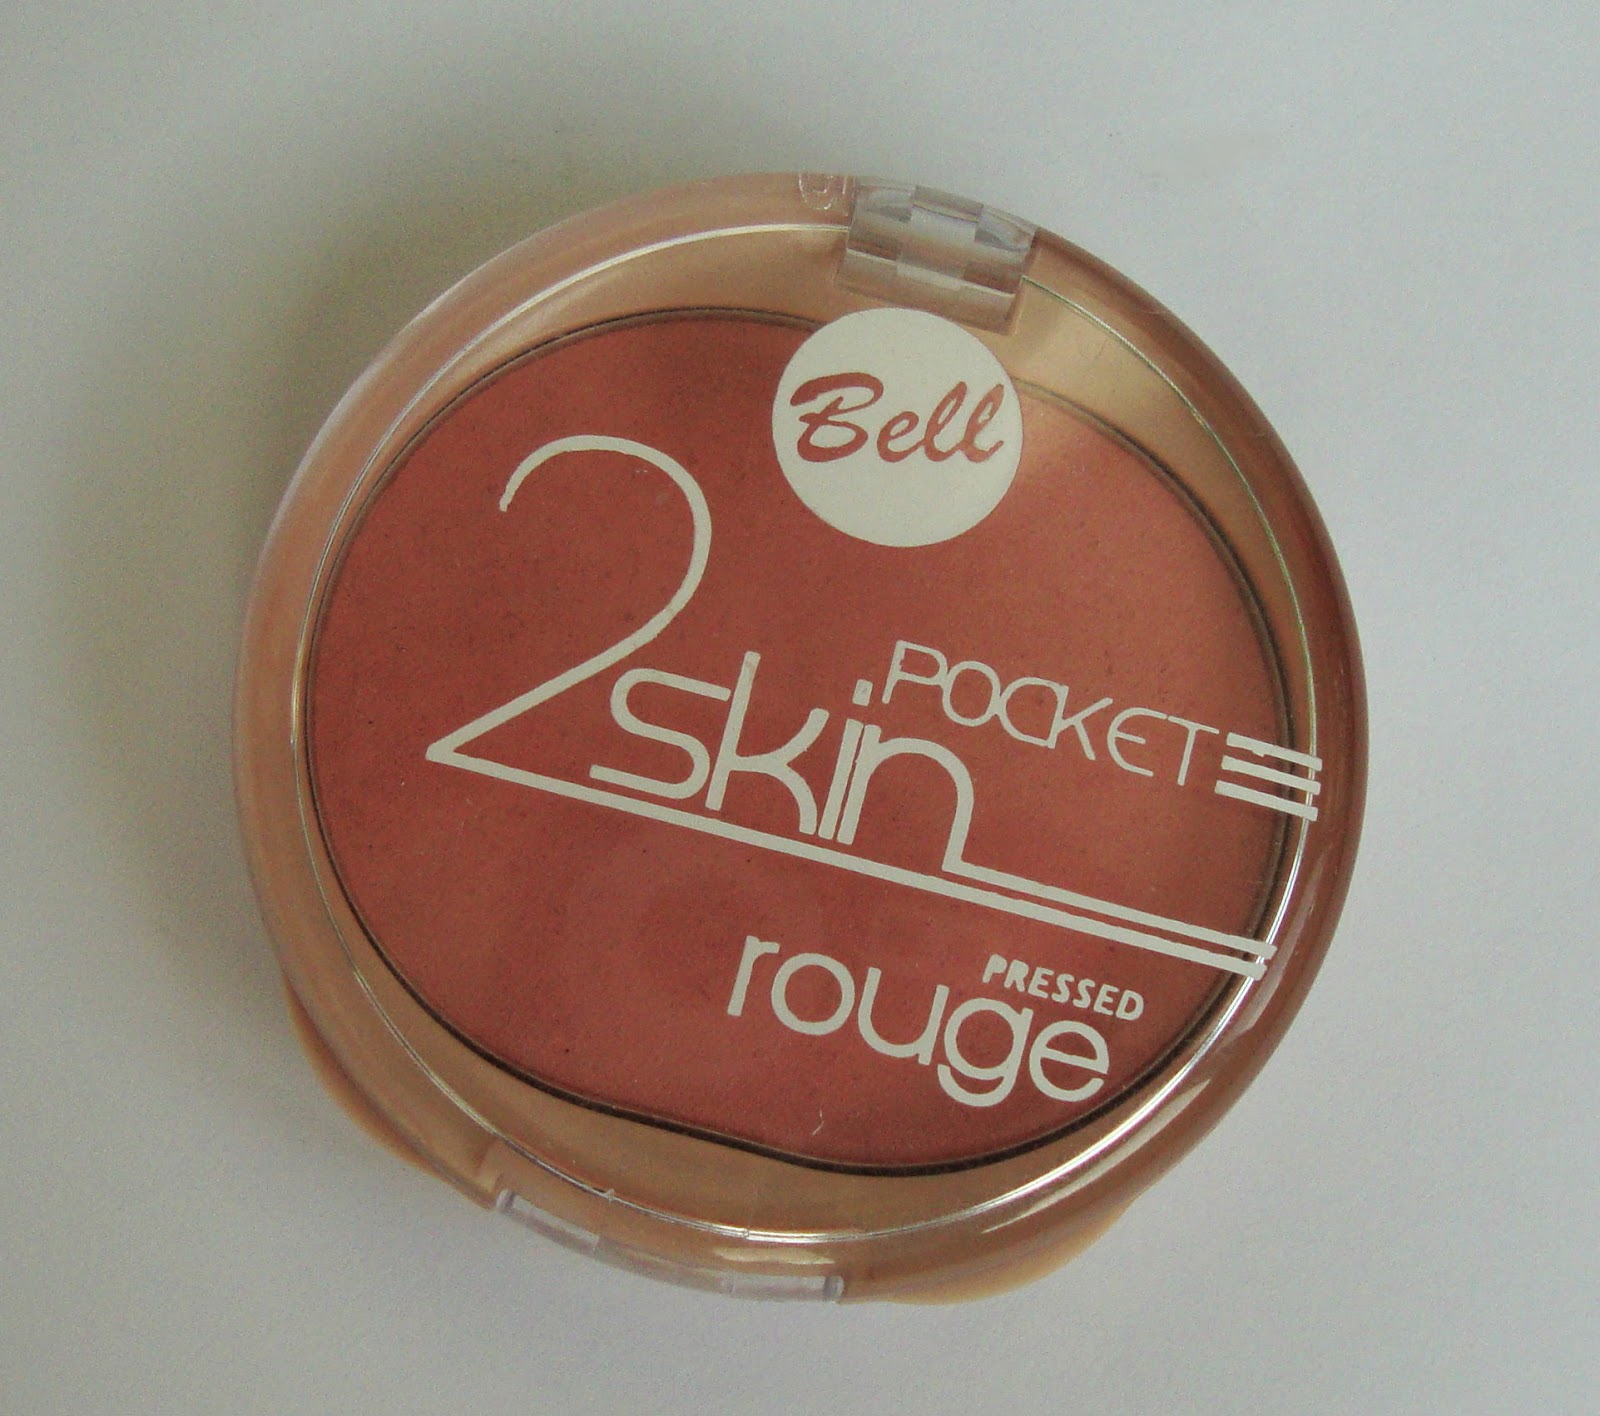 Bell 2 Skin Pocket Pressed Rouge, #53